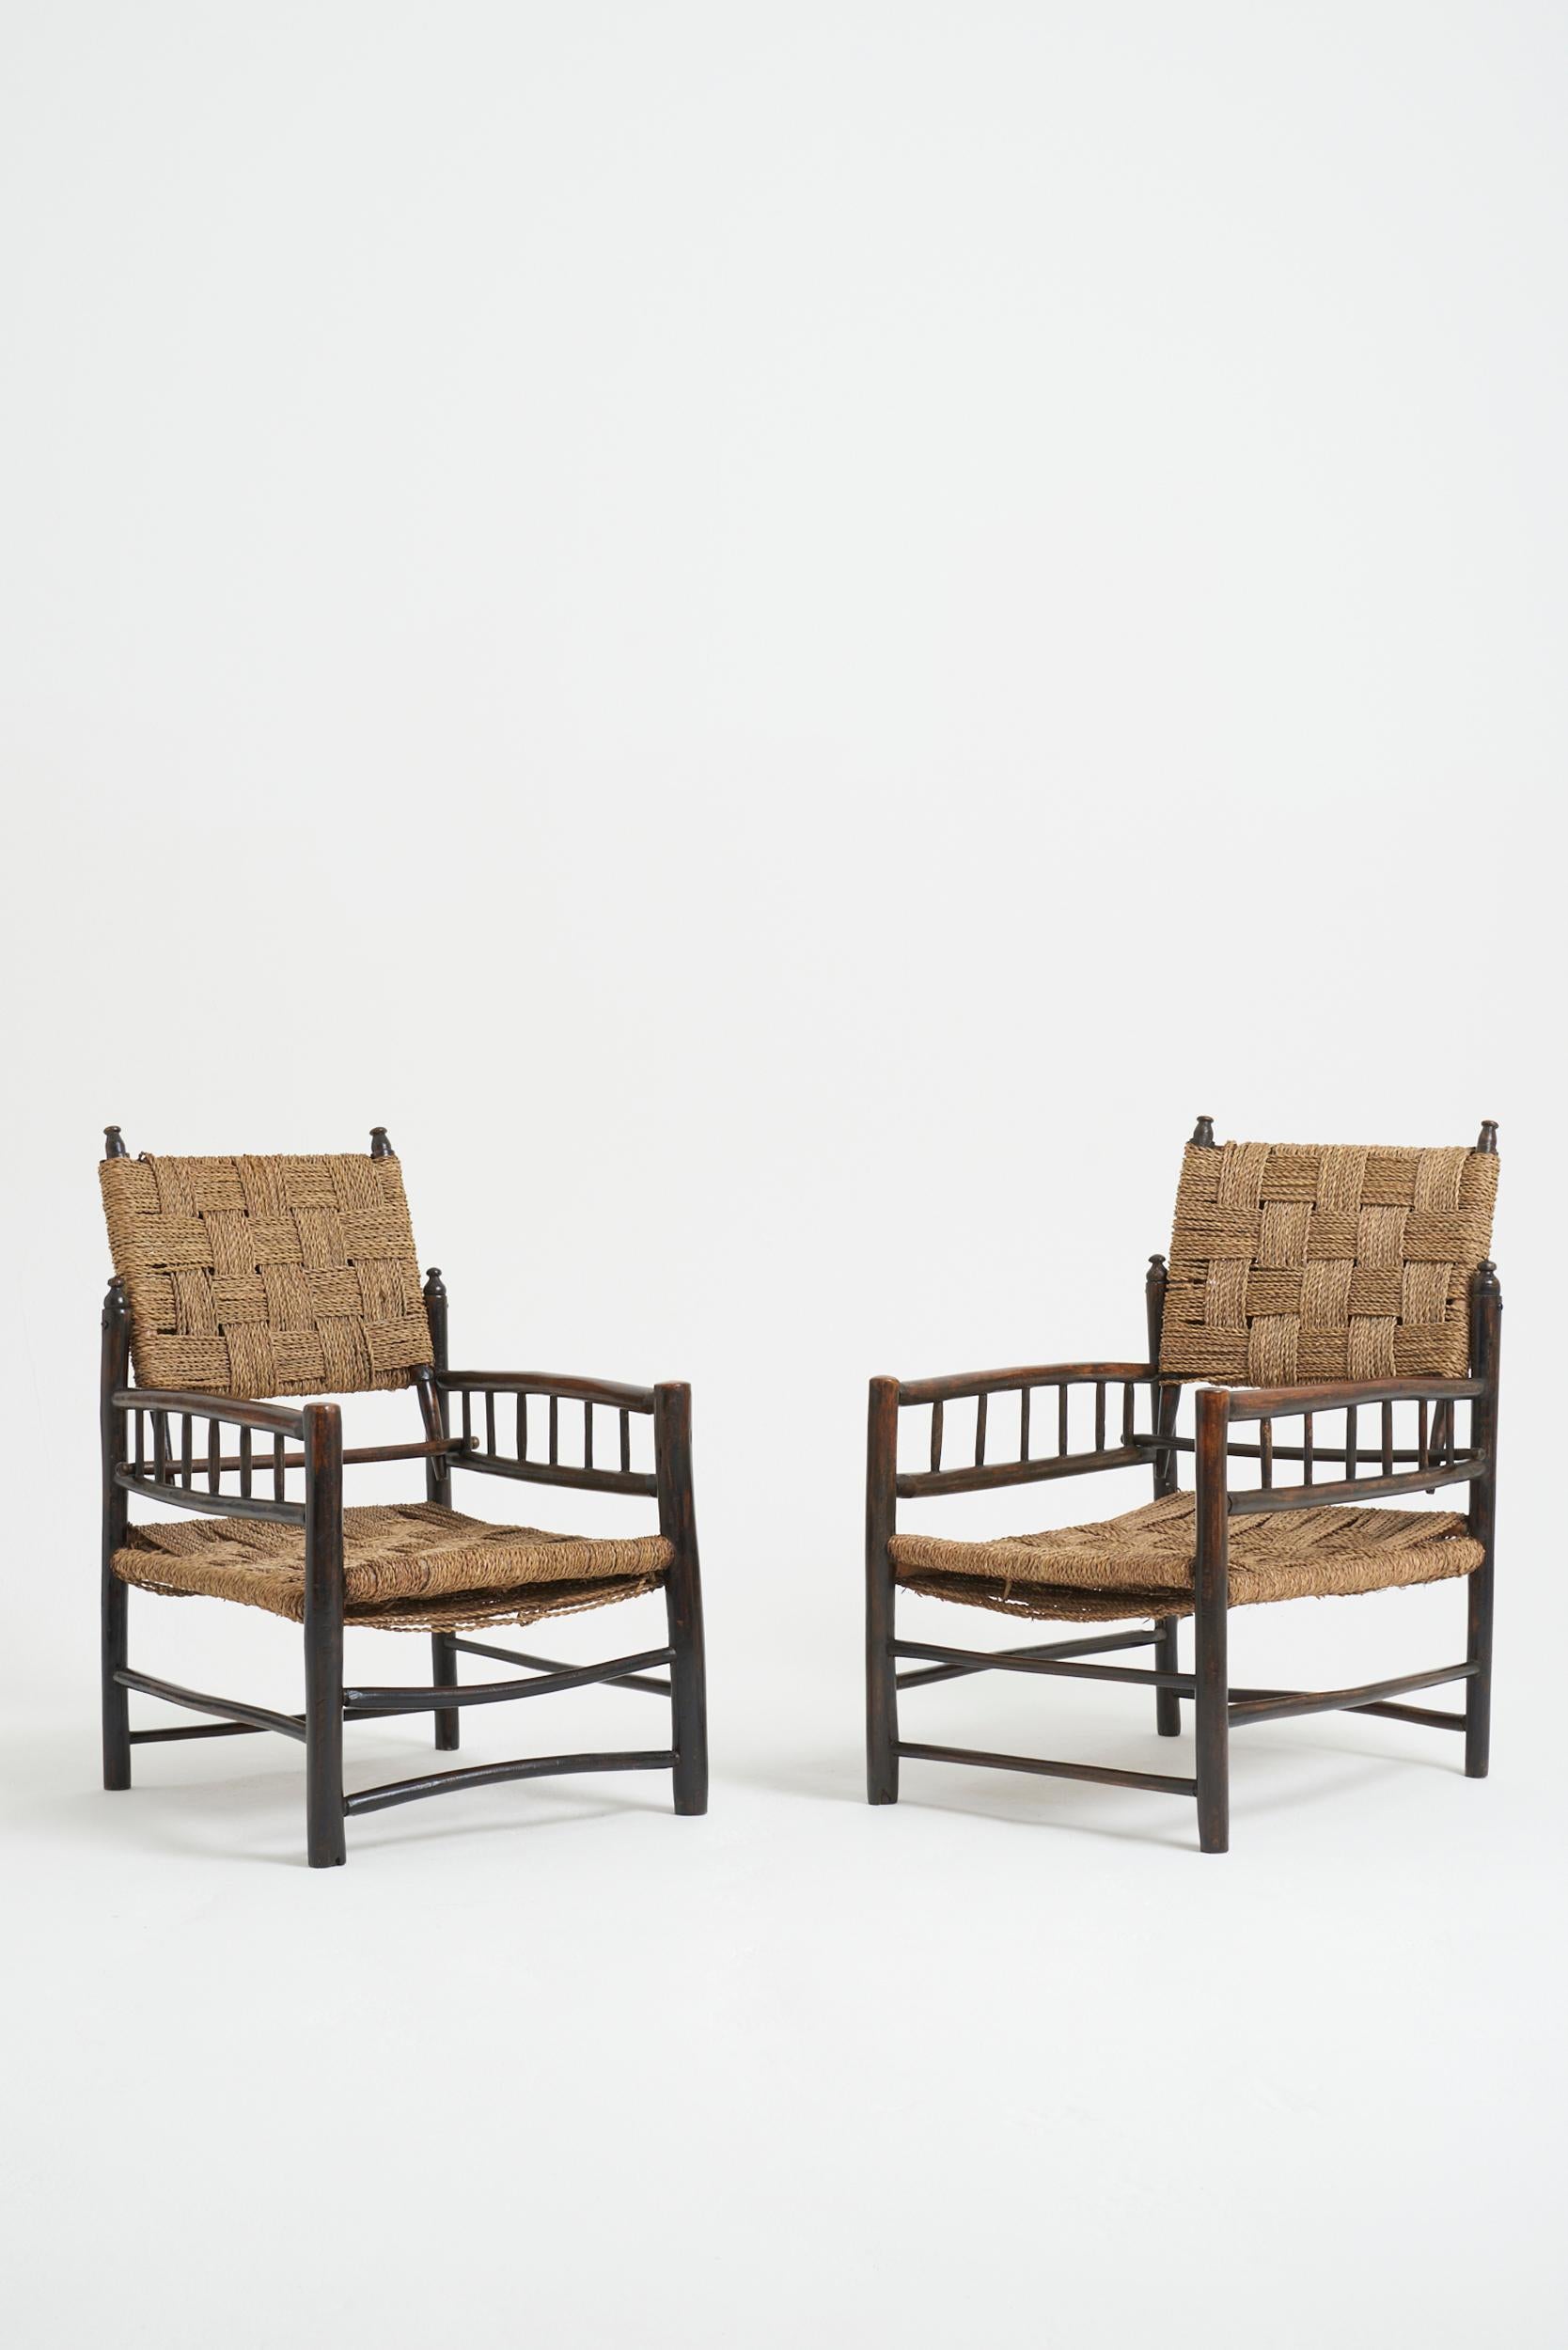 Paire de fauteuils vernaculaires, avec assise et dossier en corde.
France, première moitié du 20e siècle
81 cm de haut par 51 cm de large par 67 cm de profondeur, hauteur du siège 30 cm